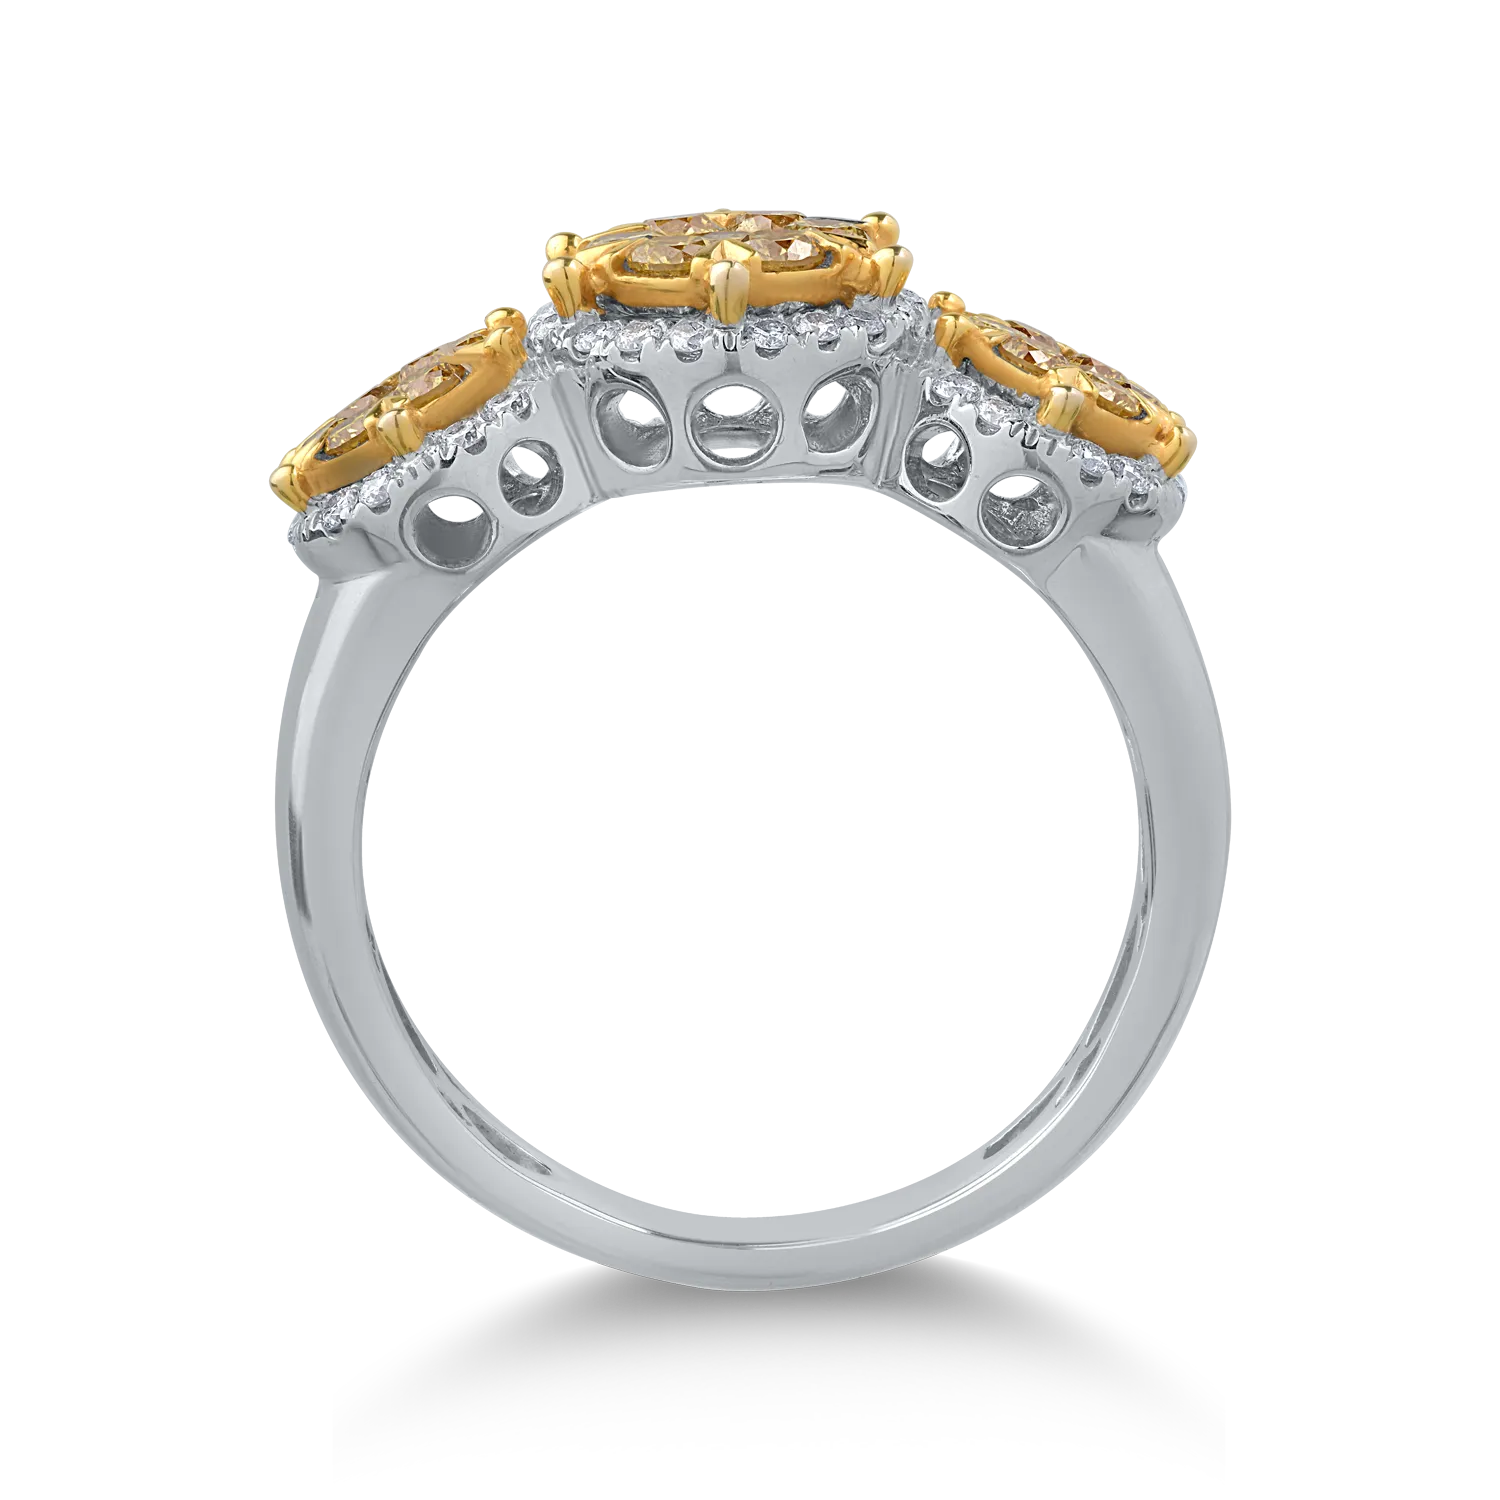 18K fehérarany gyűrű 0.62ct sárga gyémántokkal és 0.2ct tiszta gyémántokkal